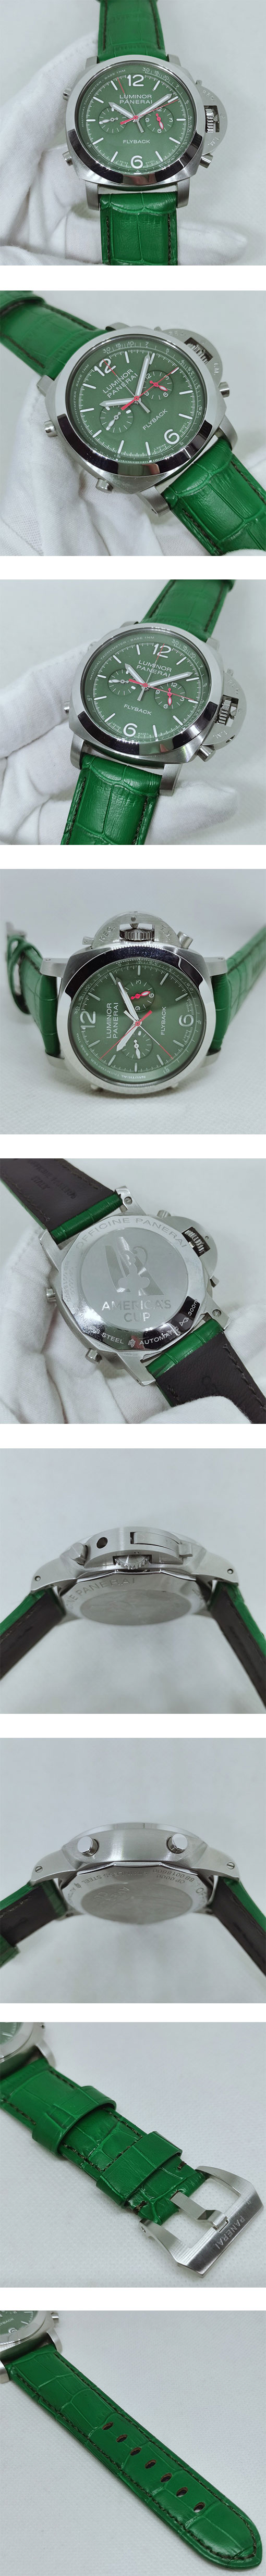 スーパーコピー時計 パネライ ルミノール クロノ フライバック セラミカ PAM01296 noob工場 